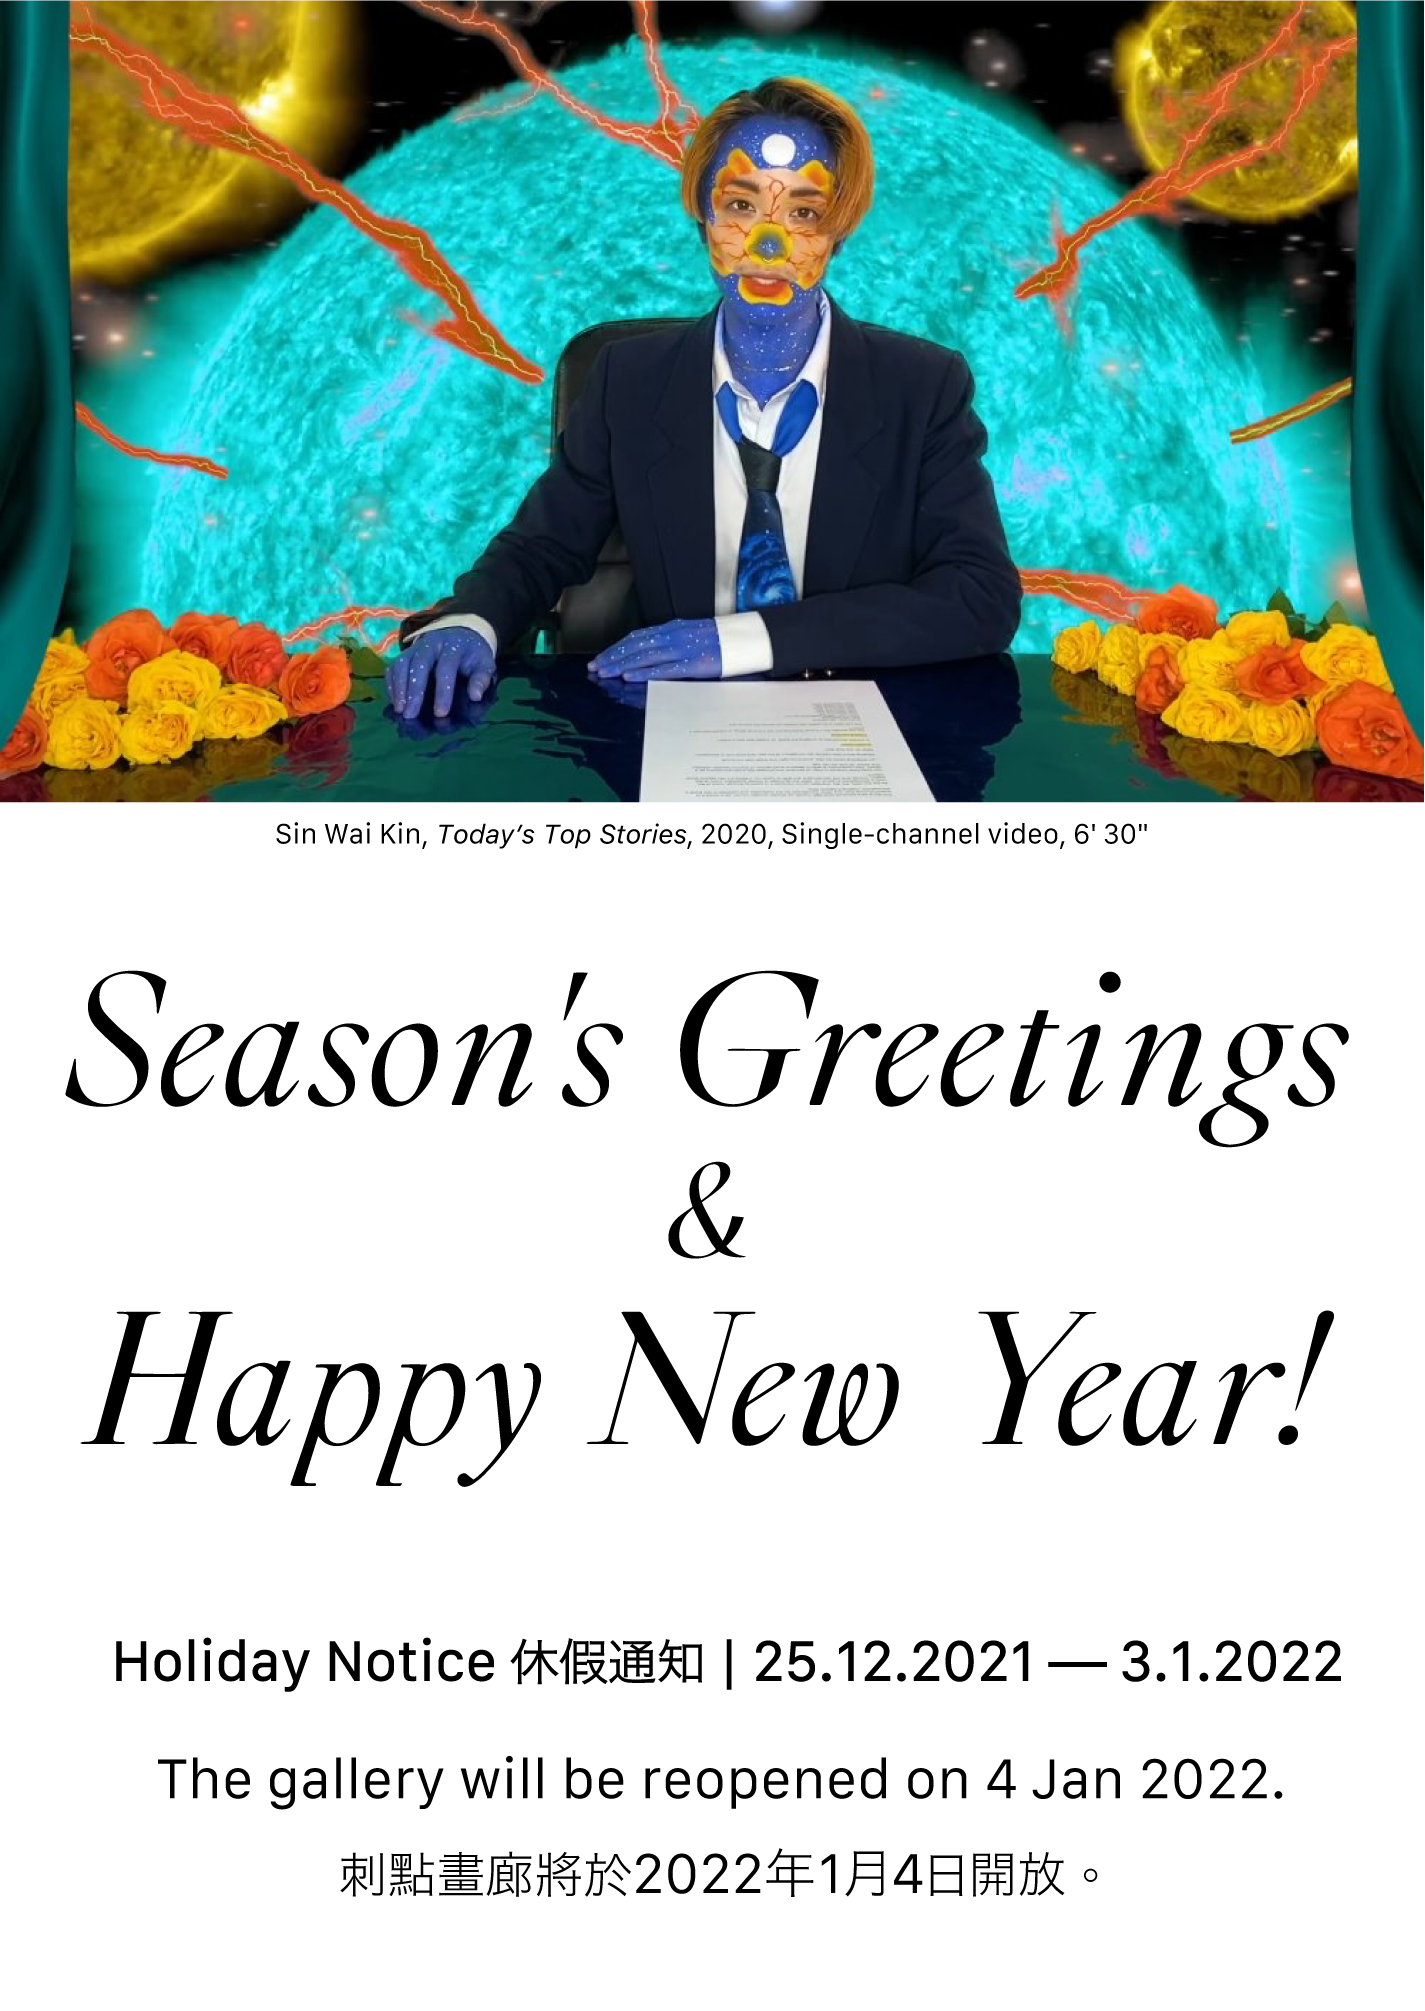 Holiday Notice 25.12.2021 — 3.1.2022